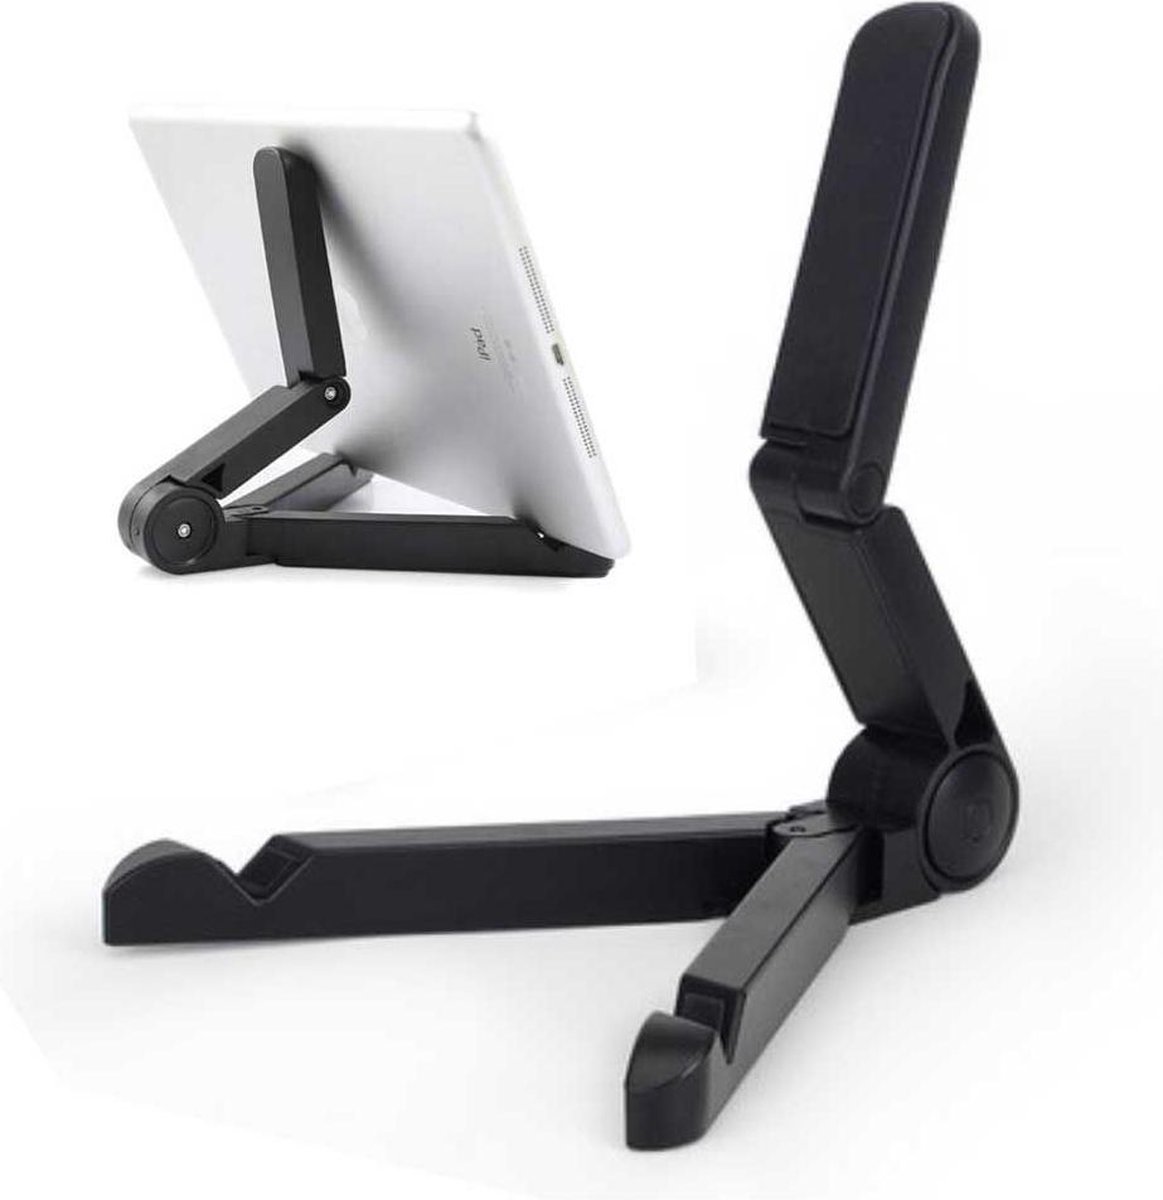 Universele tablet en of smartphone standaard - zwart - verstelbaar - makkelijk inklapbaar - 7-12 inch - iPad - ergonomisch